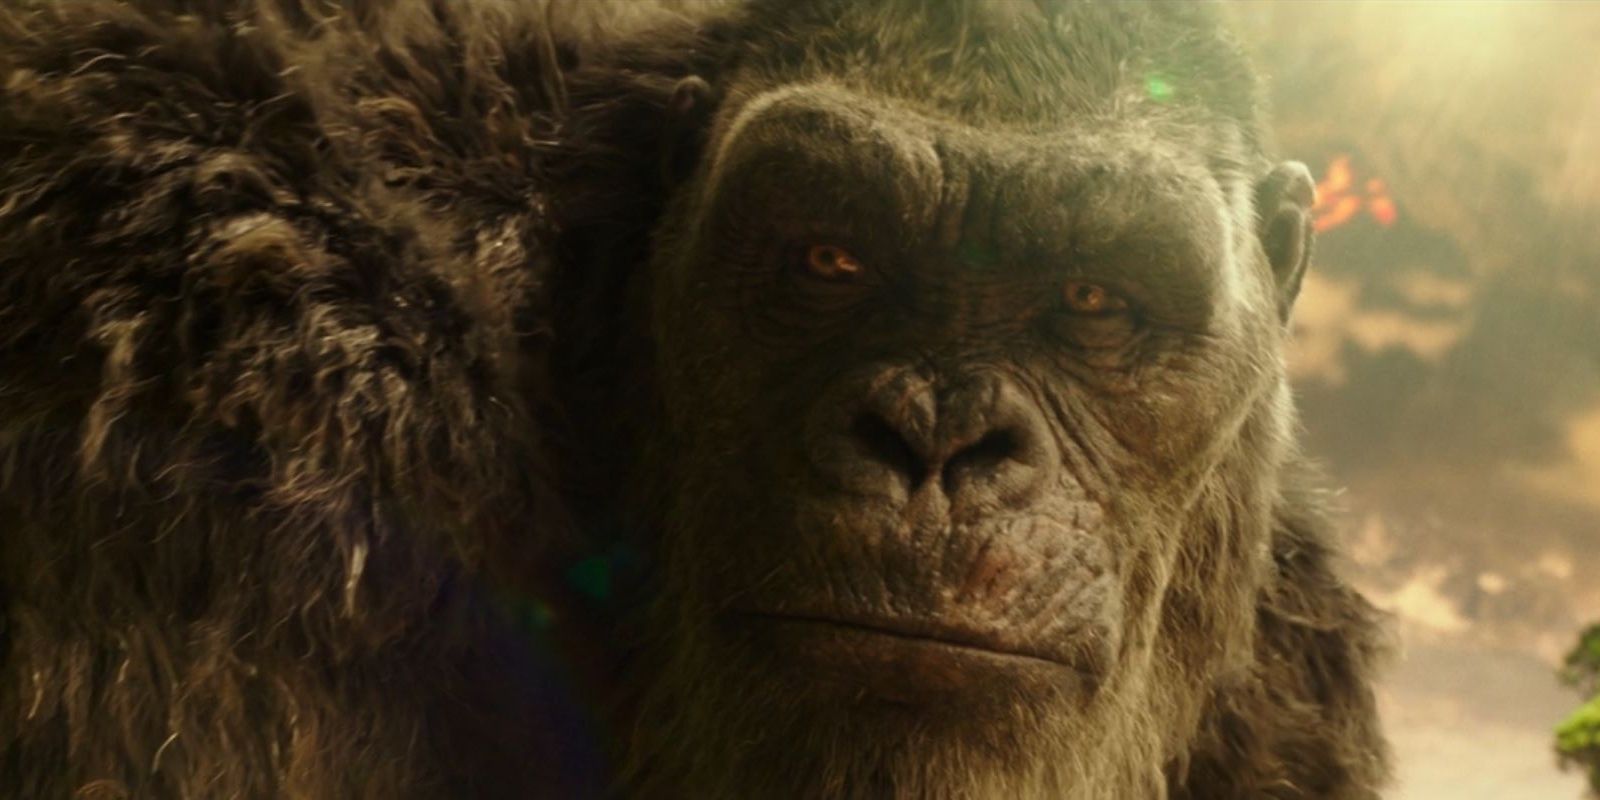 Close-up of Kong's face